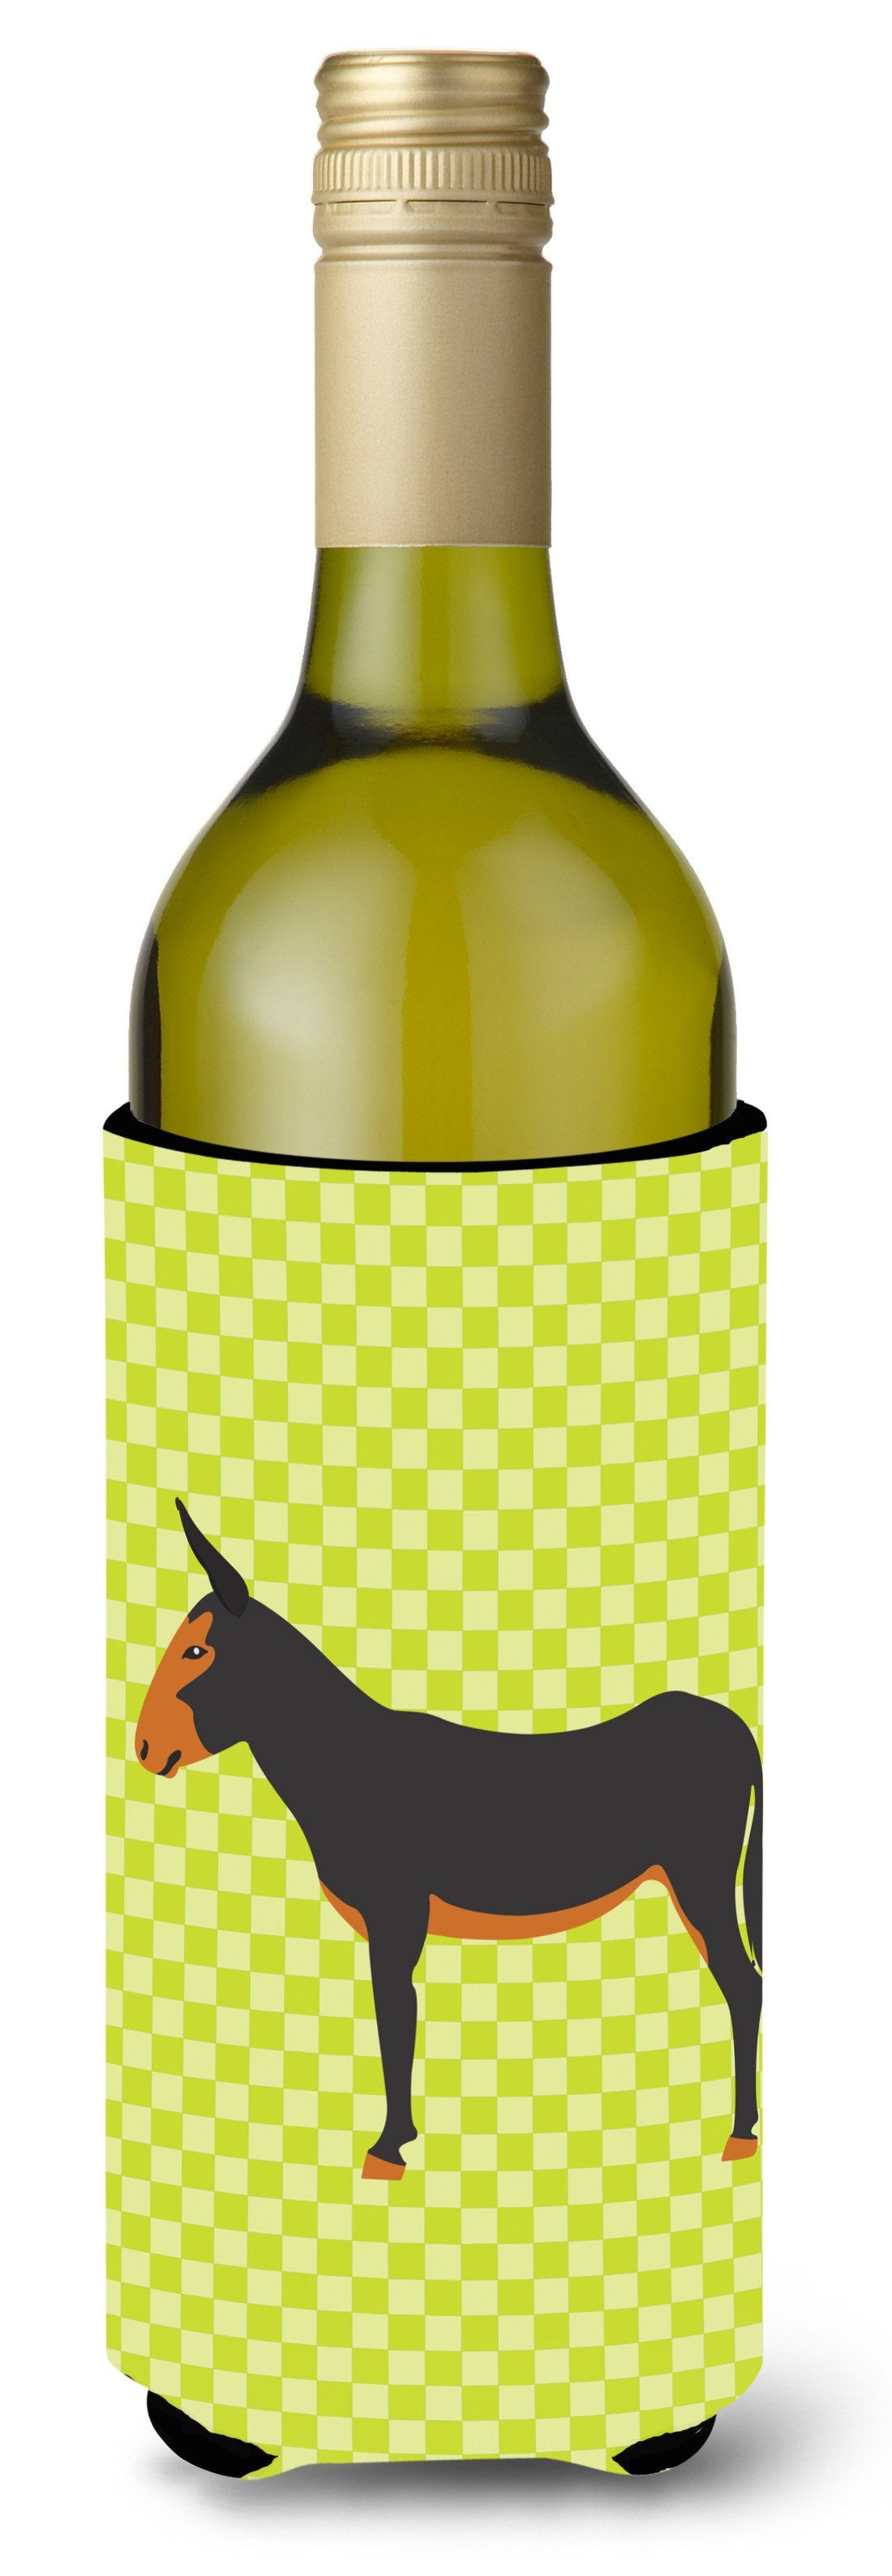 Catalan Donkey Green Wine Bottle Beverge Insulator Hugger BB7681LITERK by Caroline's Treasures